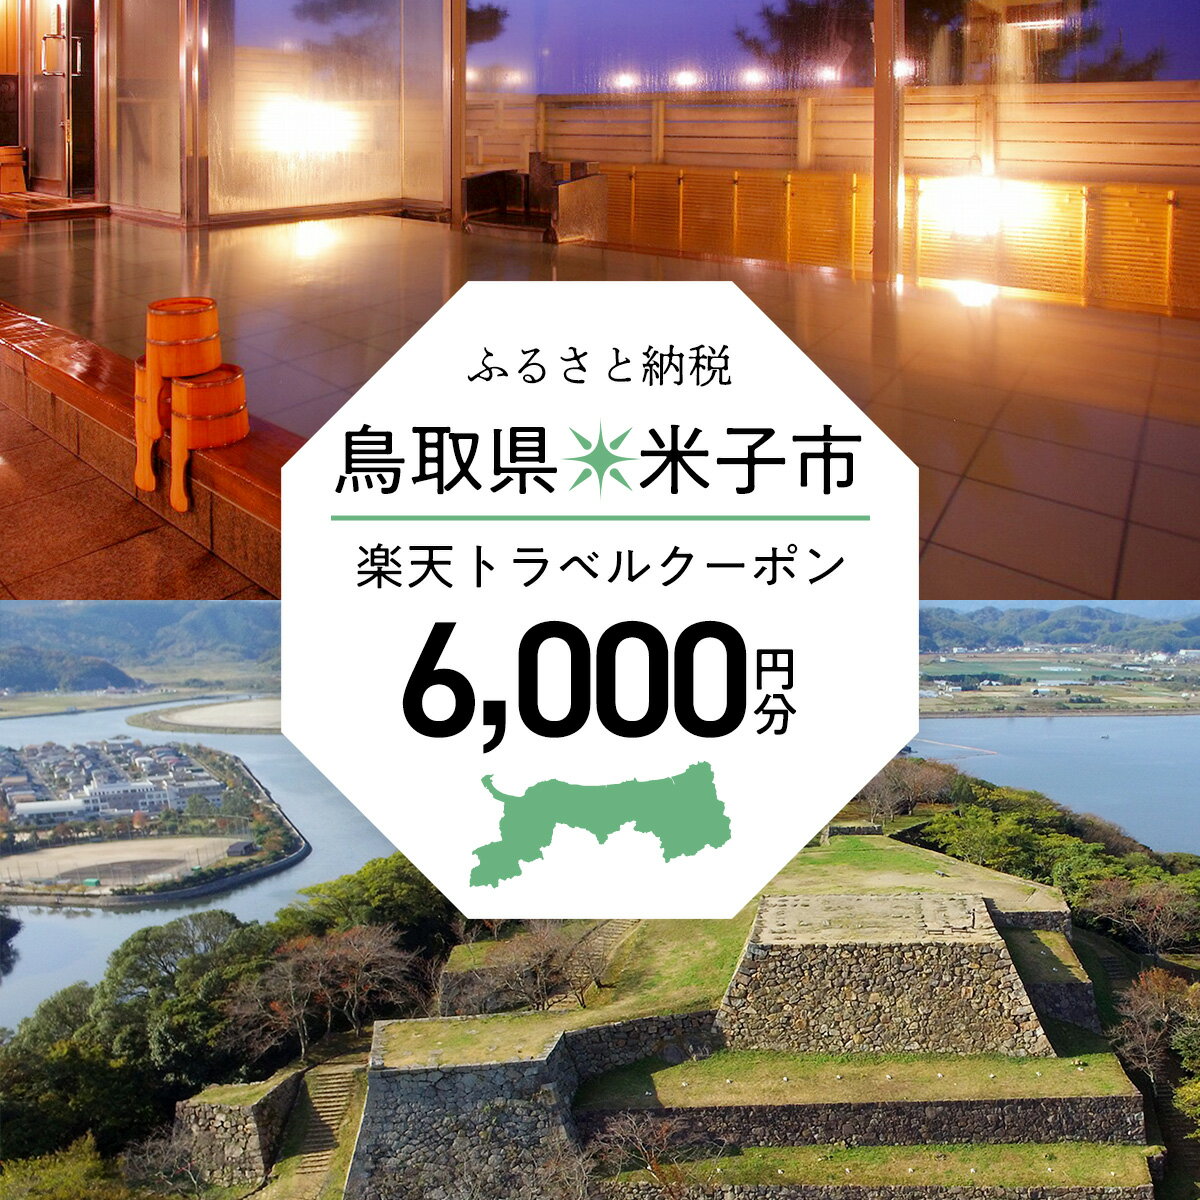 【ふるさと納税】鳥取県米子市の対象施設で使える...の紹介画像2